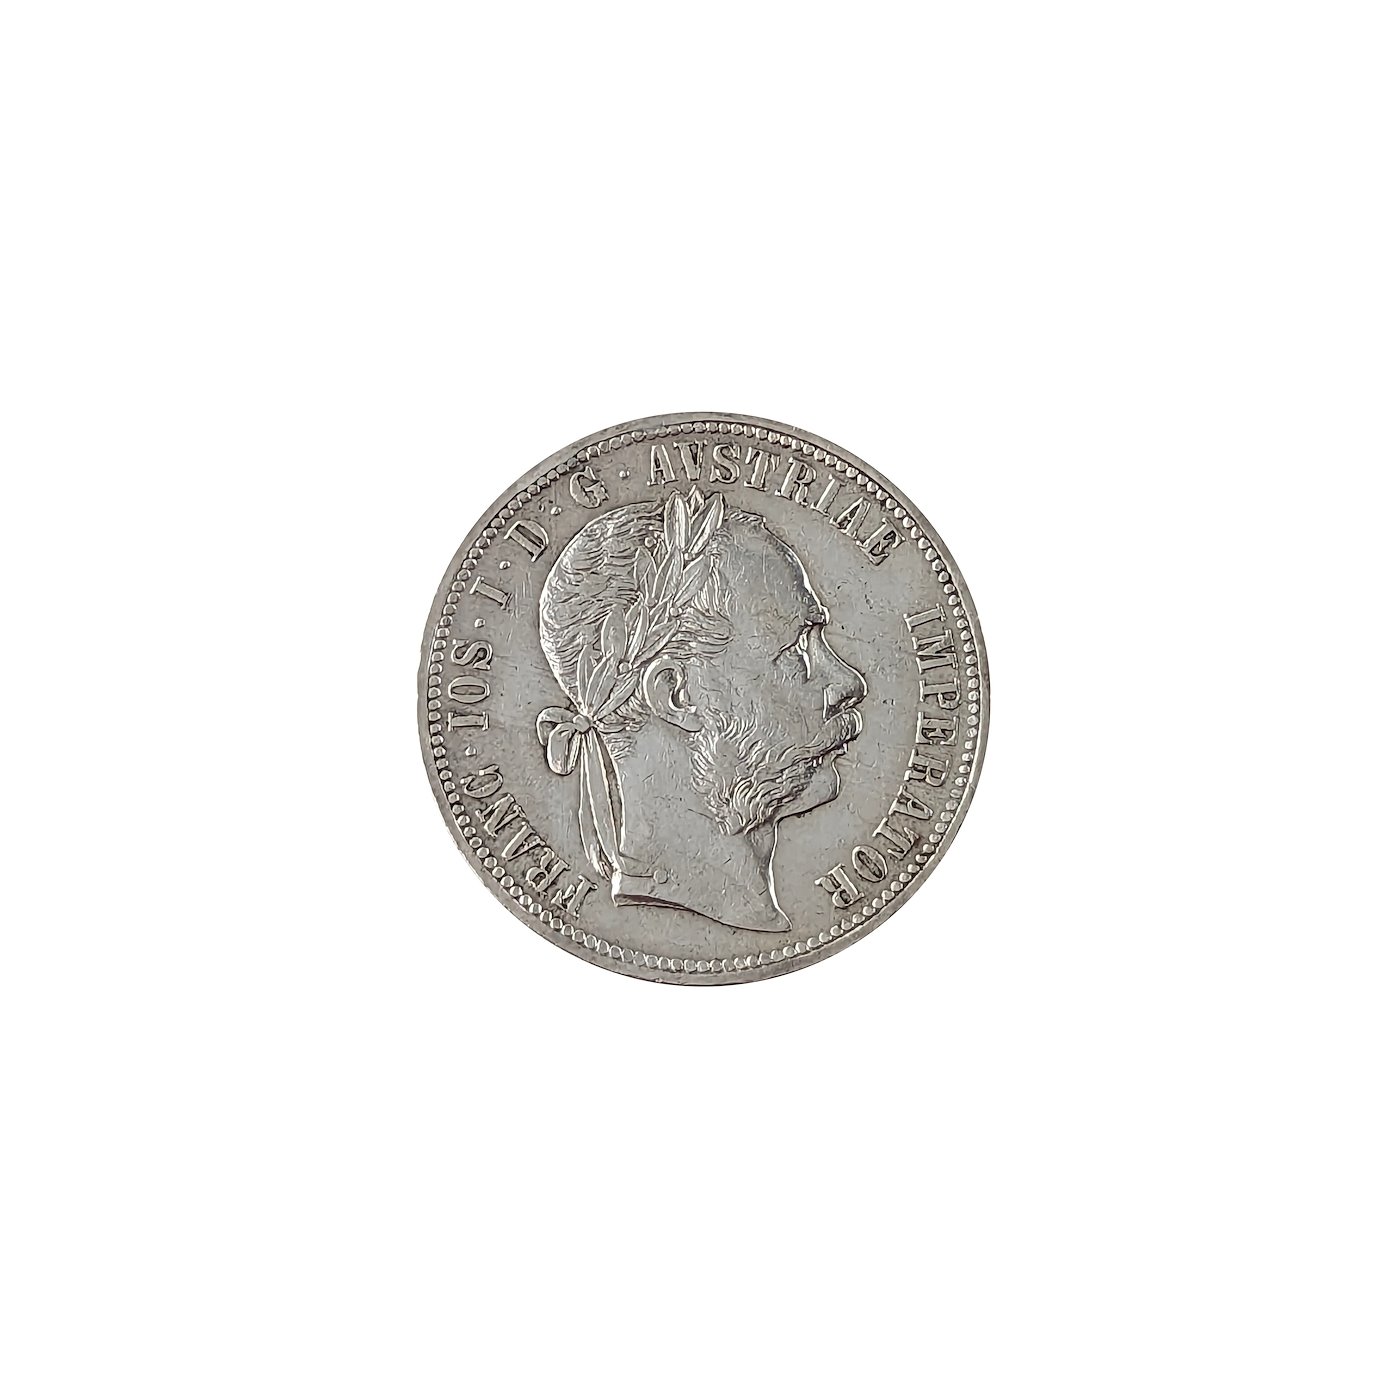 .. - Rakousko Uhersko František Josef I. Stříbro Konvenční měna 1 Zlatník 1886 rakouský